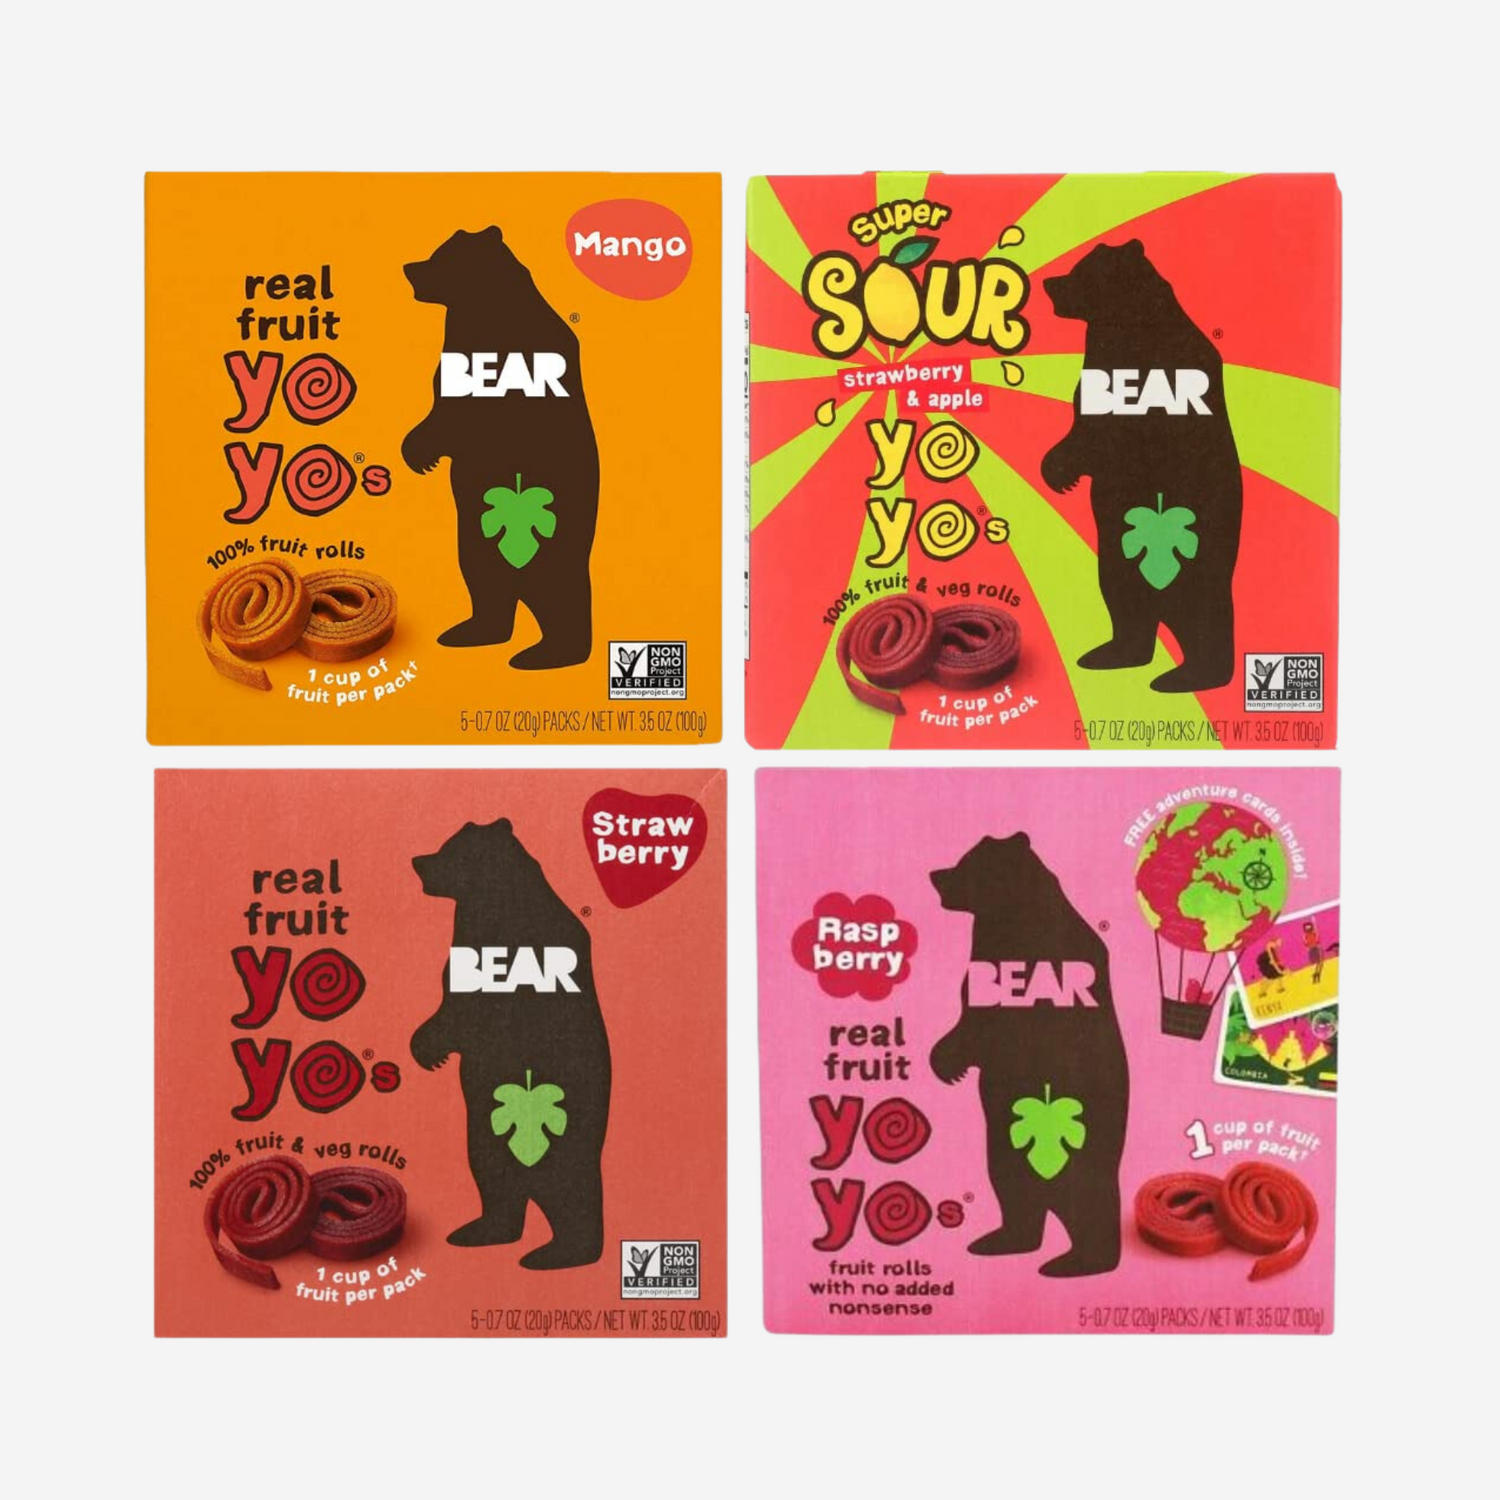 Bear - Real Fruit Yoyos Variety Pack (4 Pack) in Sanisco Packaging.